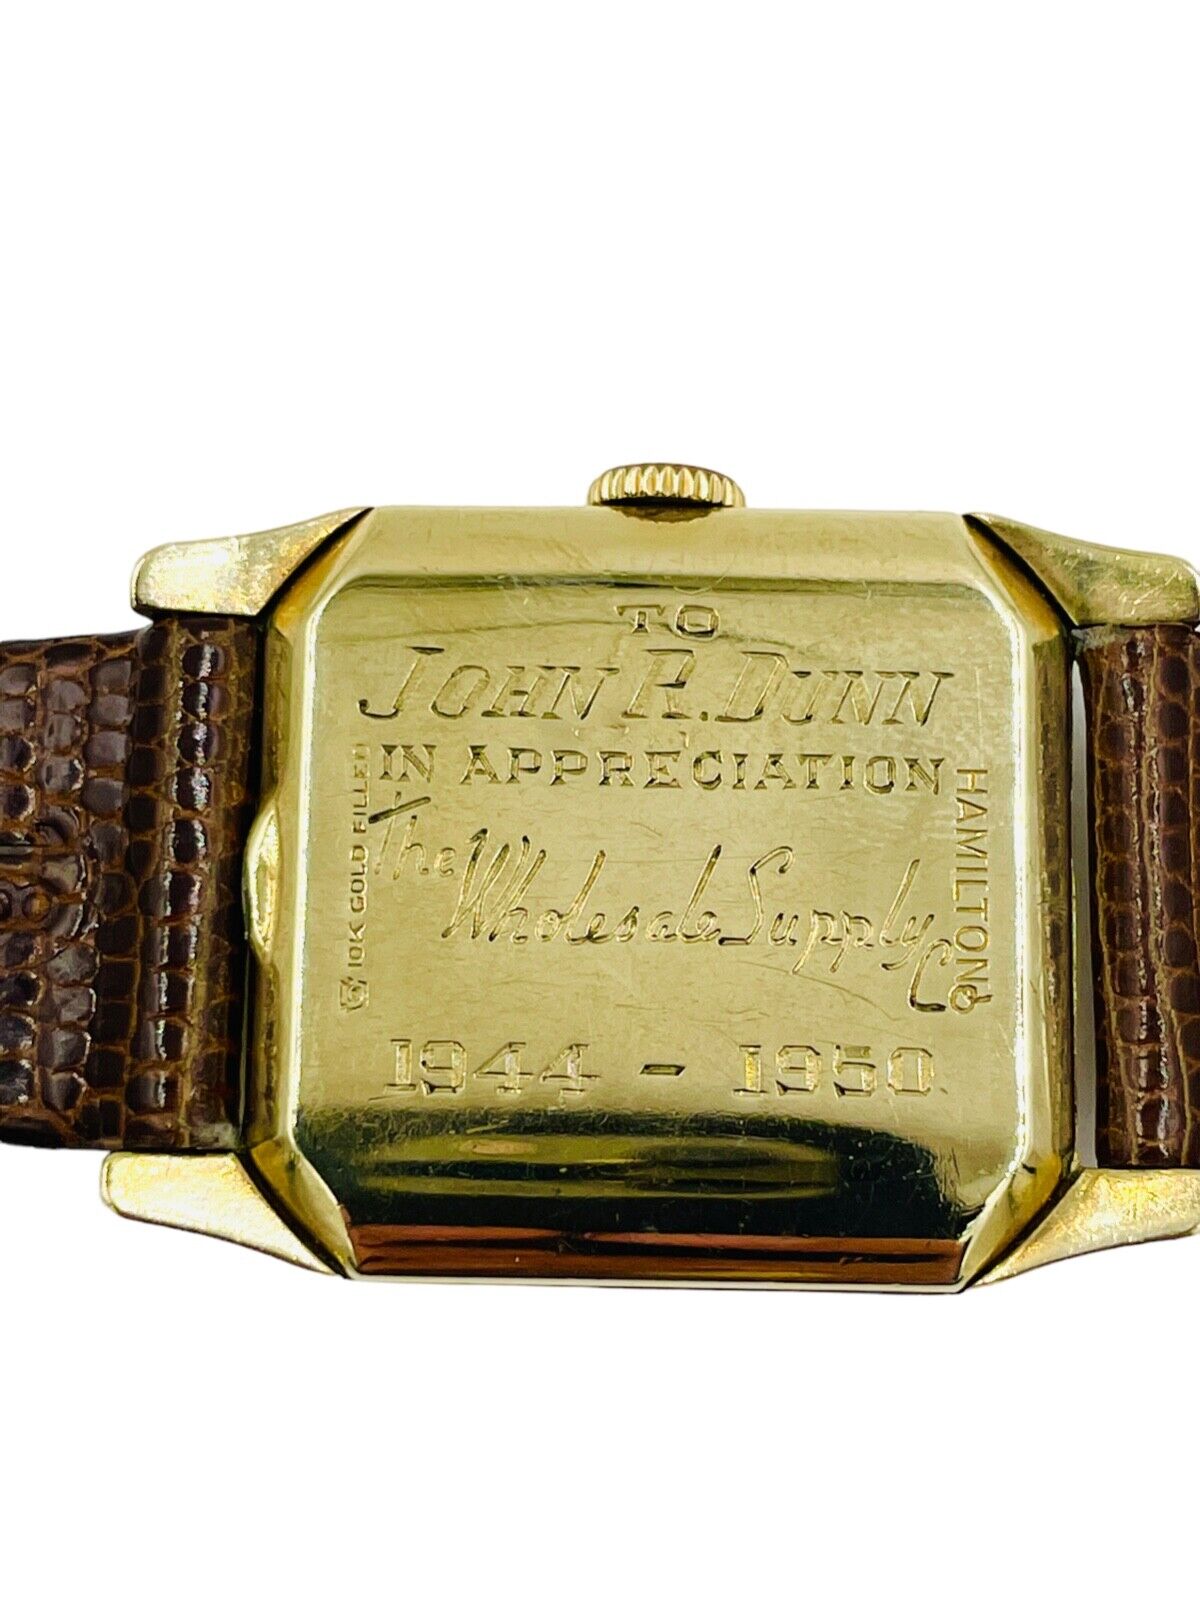 Hamilton Lambert 17j 10k gold filled wrist watch running strong